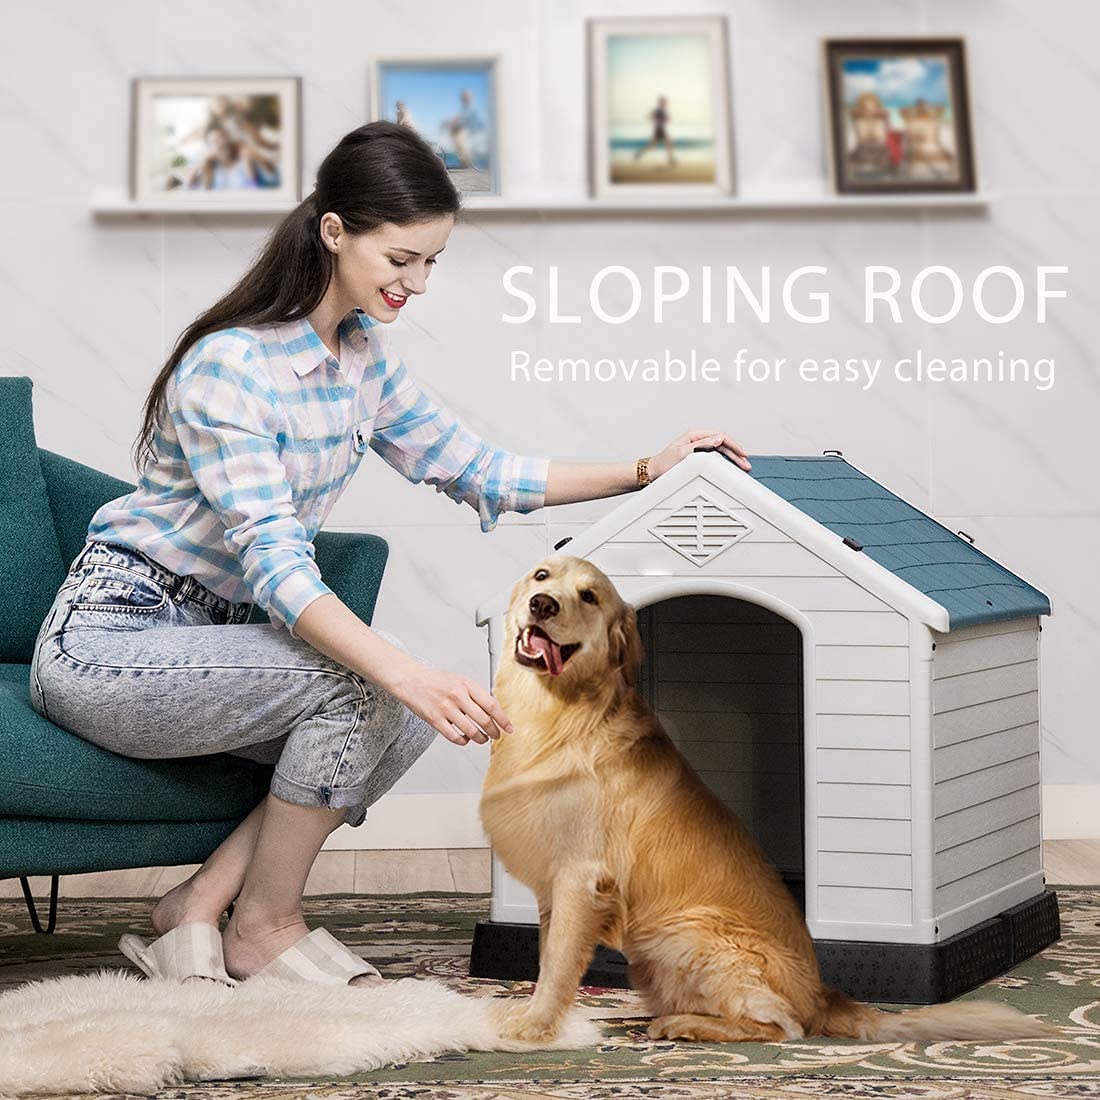 طراحی جداشدنی و سطح صاف خانه حیوان خانگی ما تمیز کردن را آسان تر می کند